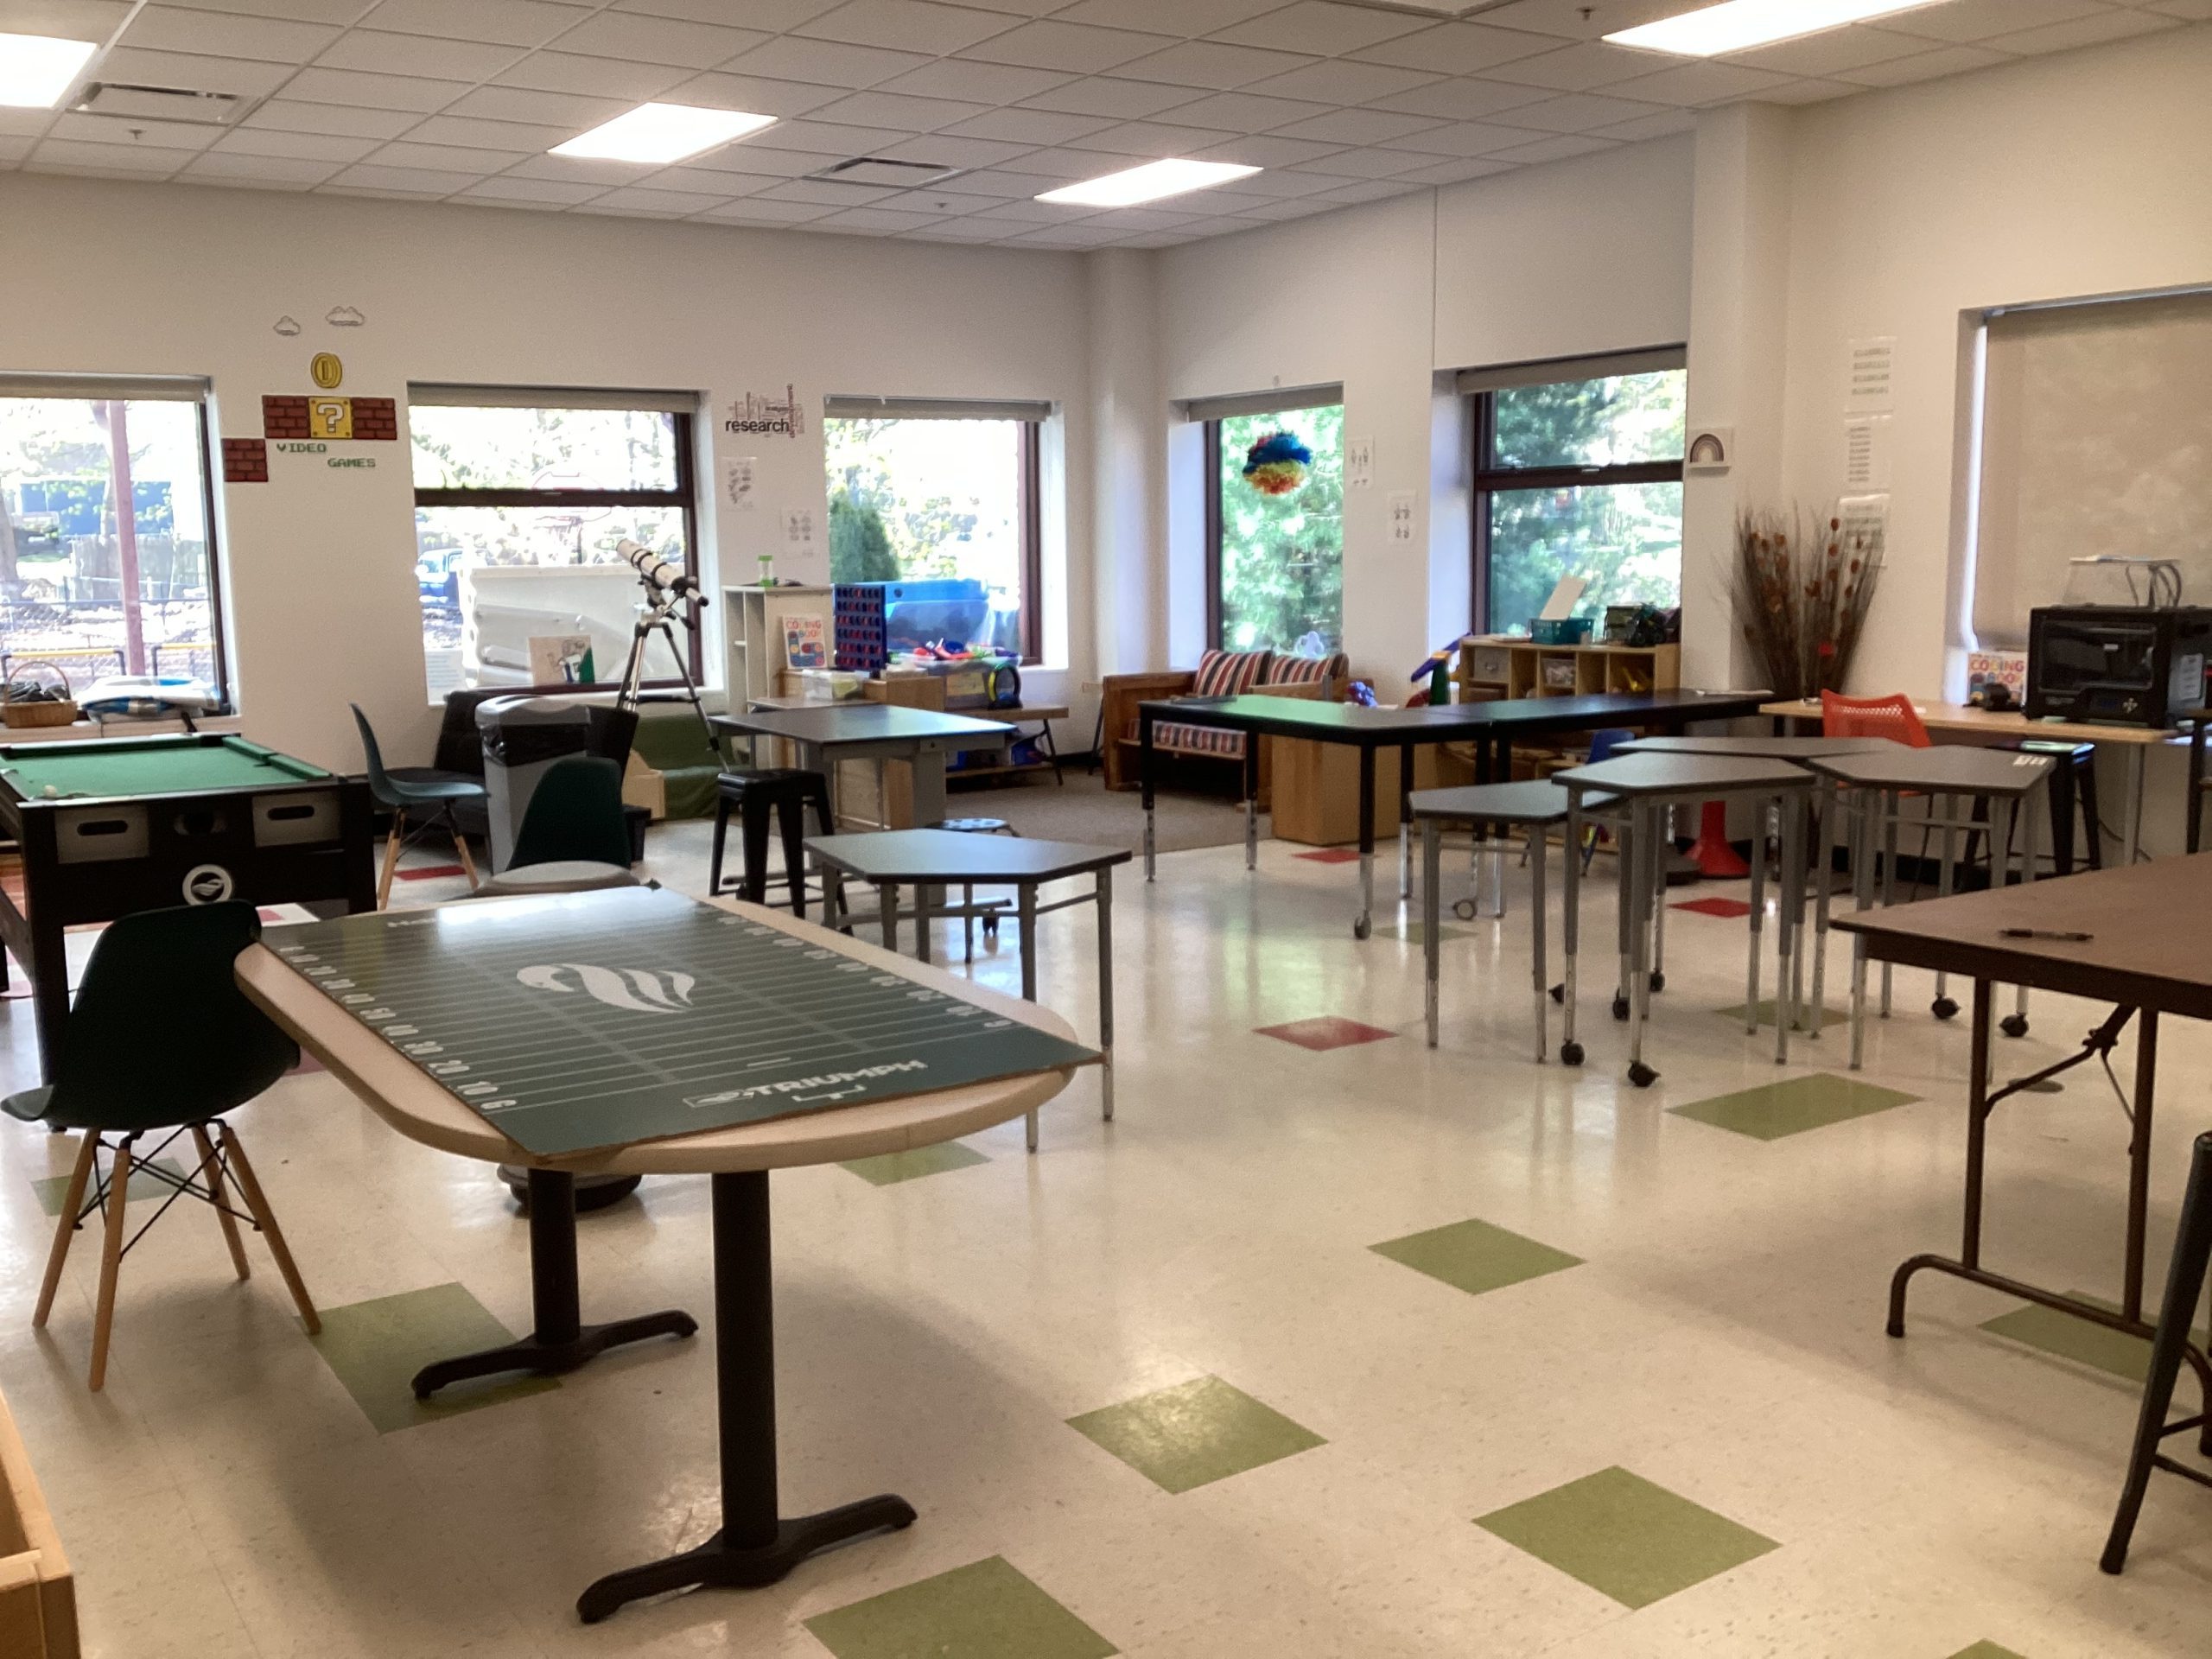 STEAM Childcare Classroom in Attleboro, MA